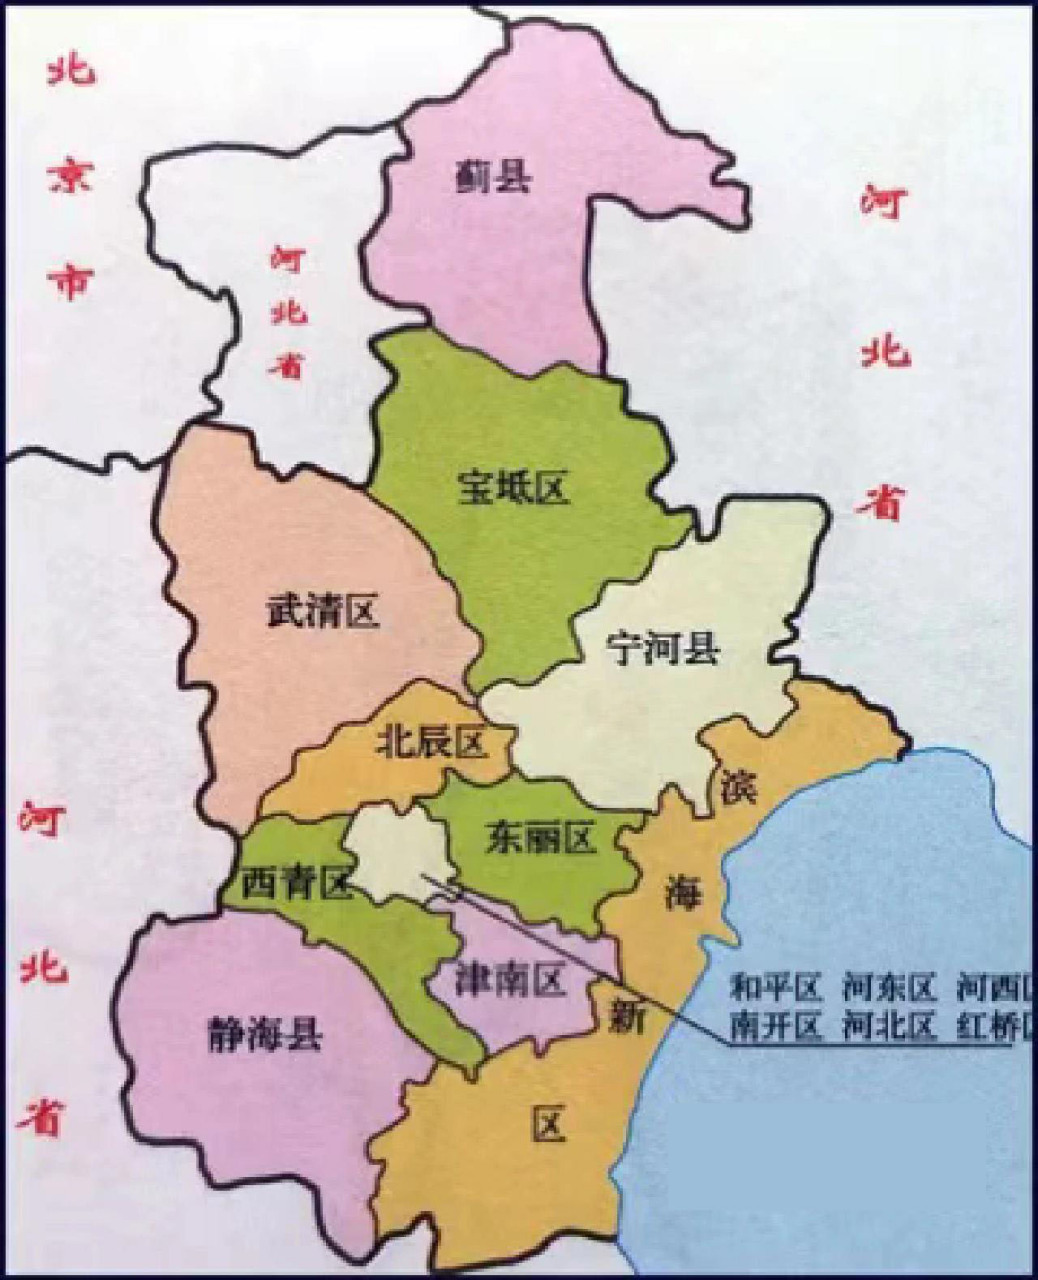 天津电信5g覆盖区域图图片